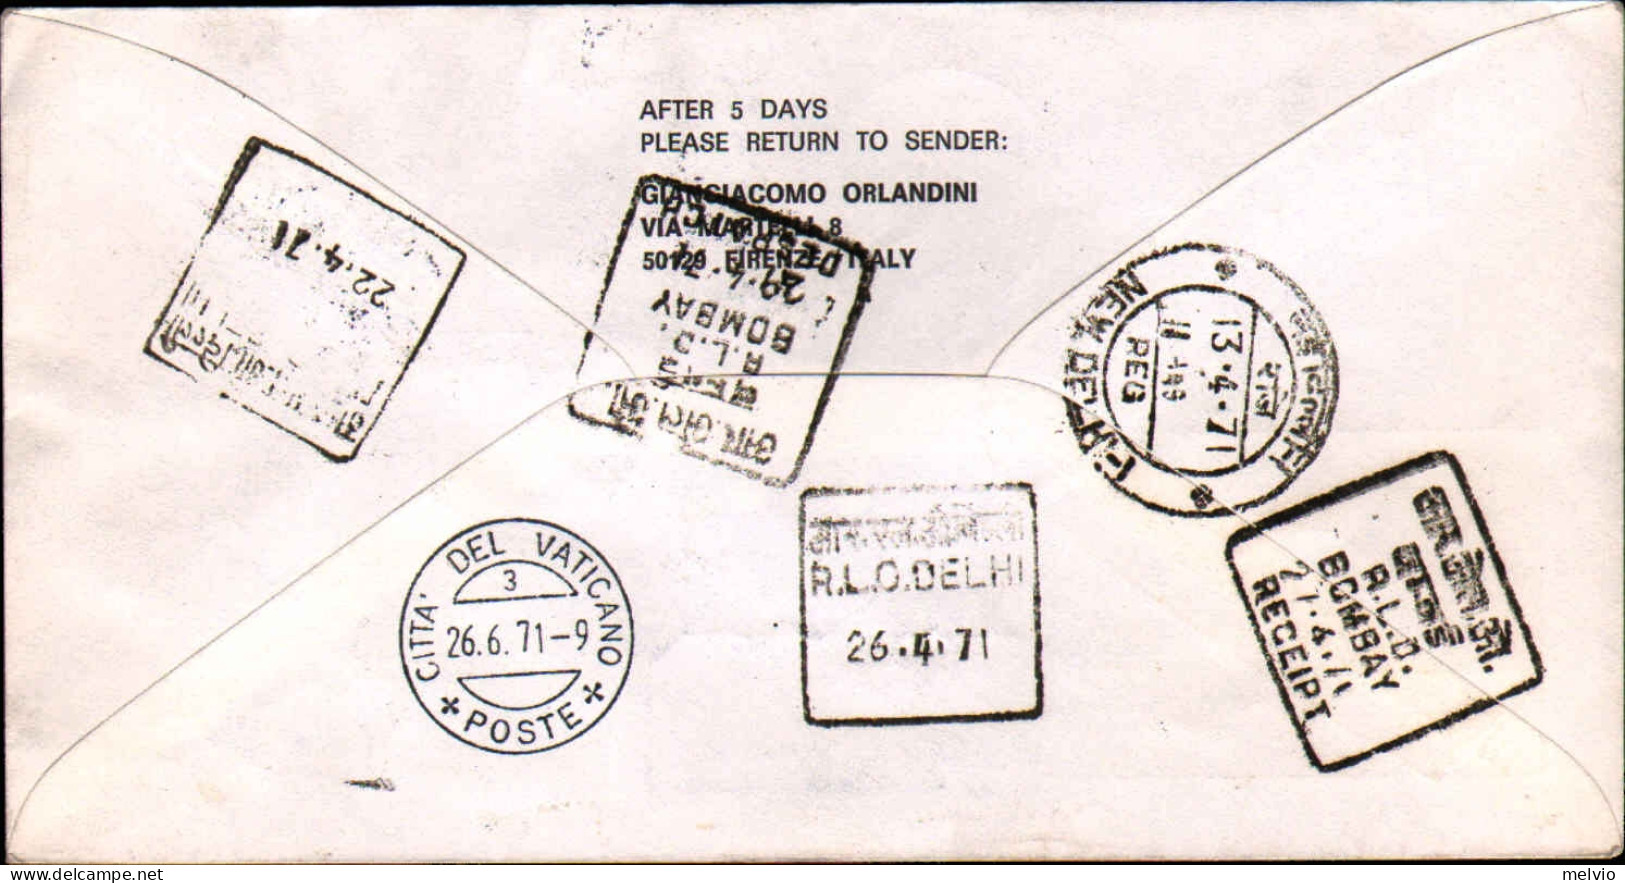 Vaticano-1971 Stampe Raccomandata Per Via Aerea Alitalia I^volo Roma-New Delhi,a - Luftpost